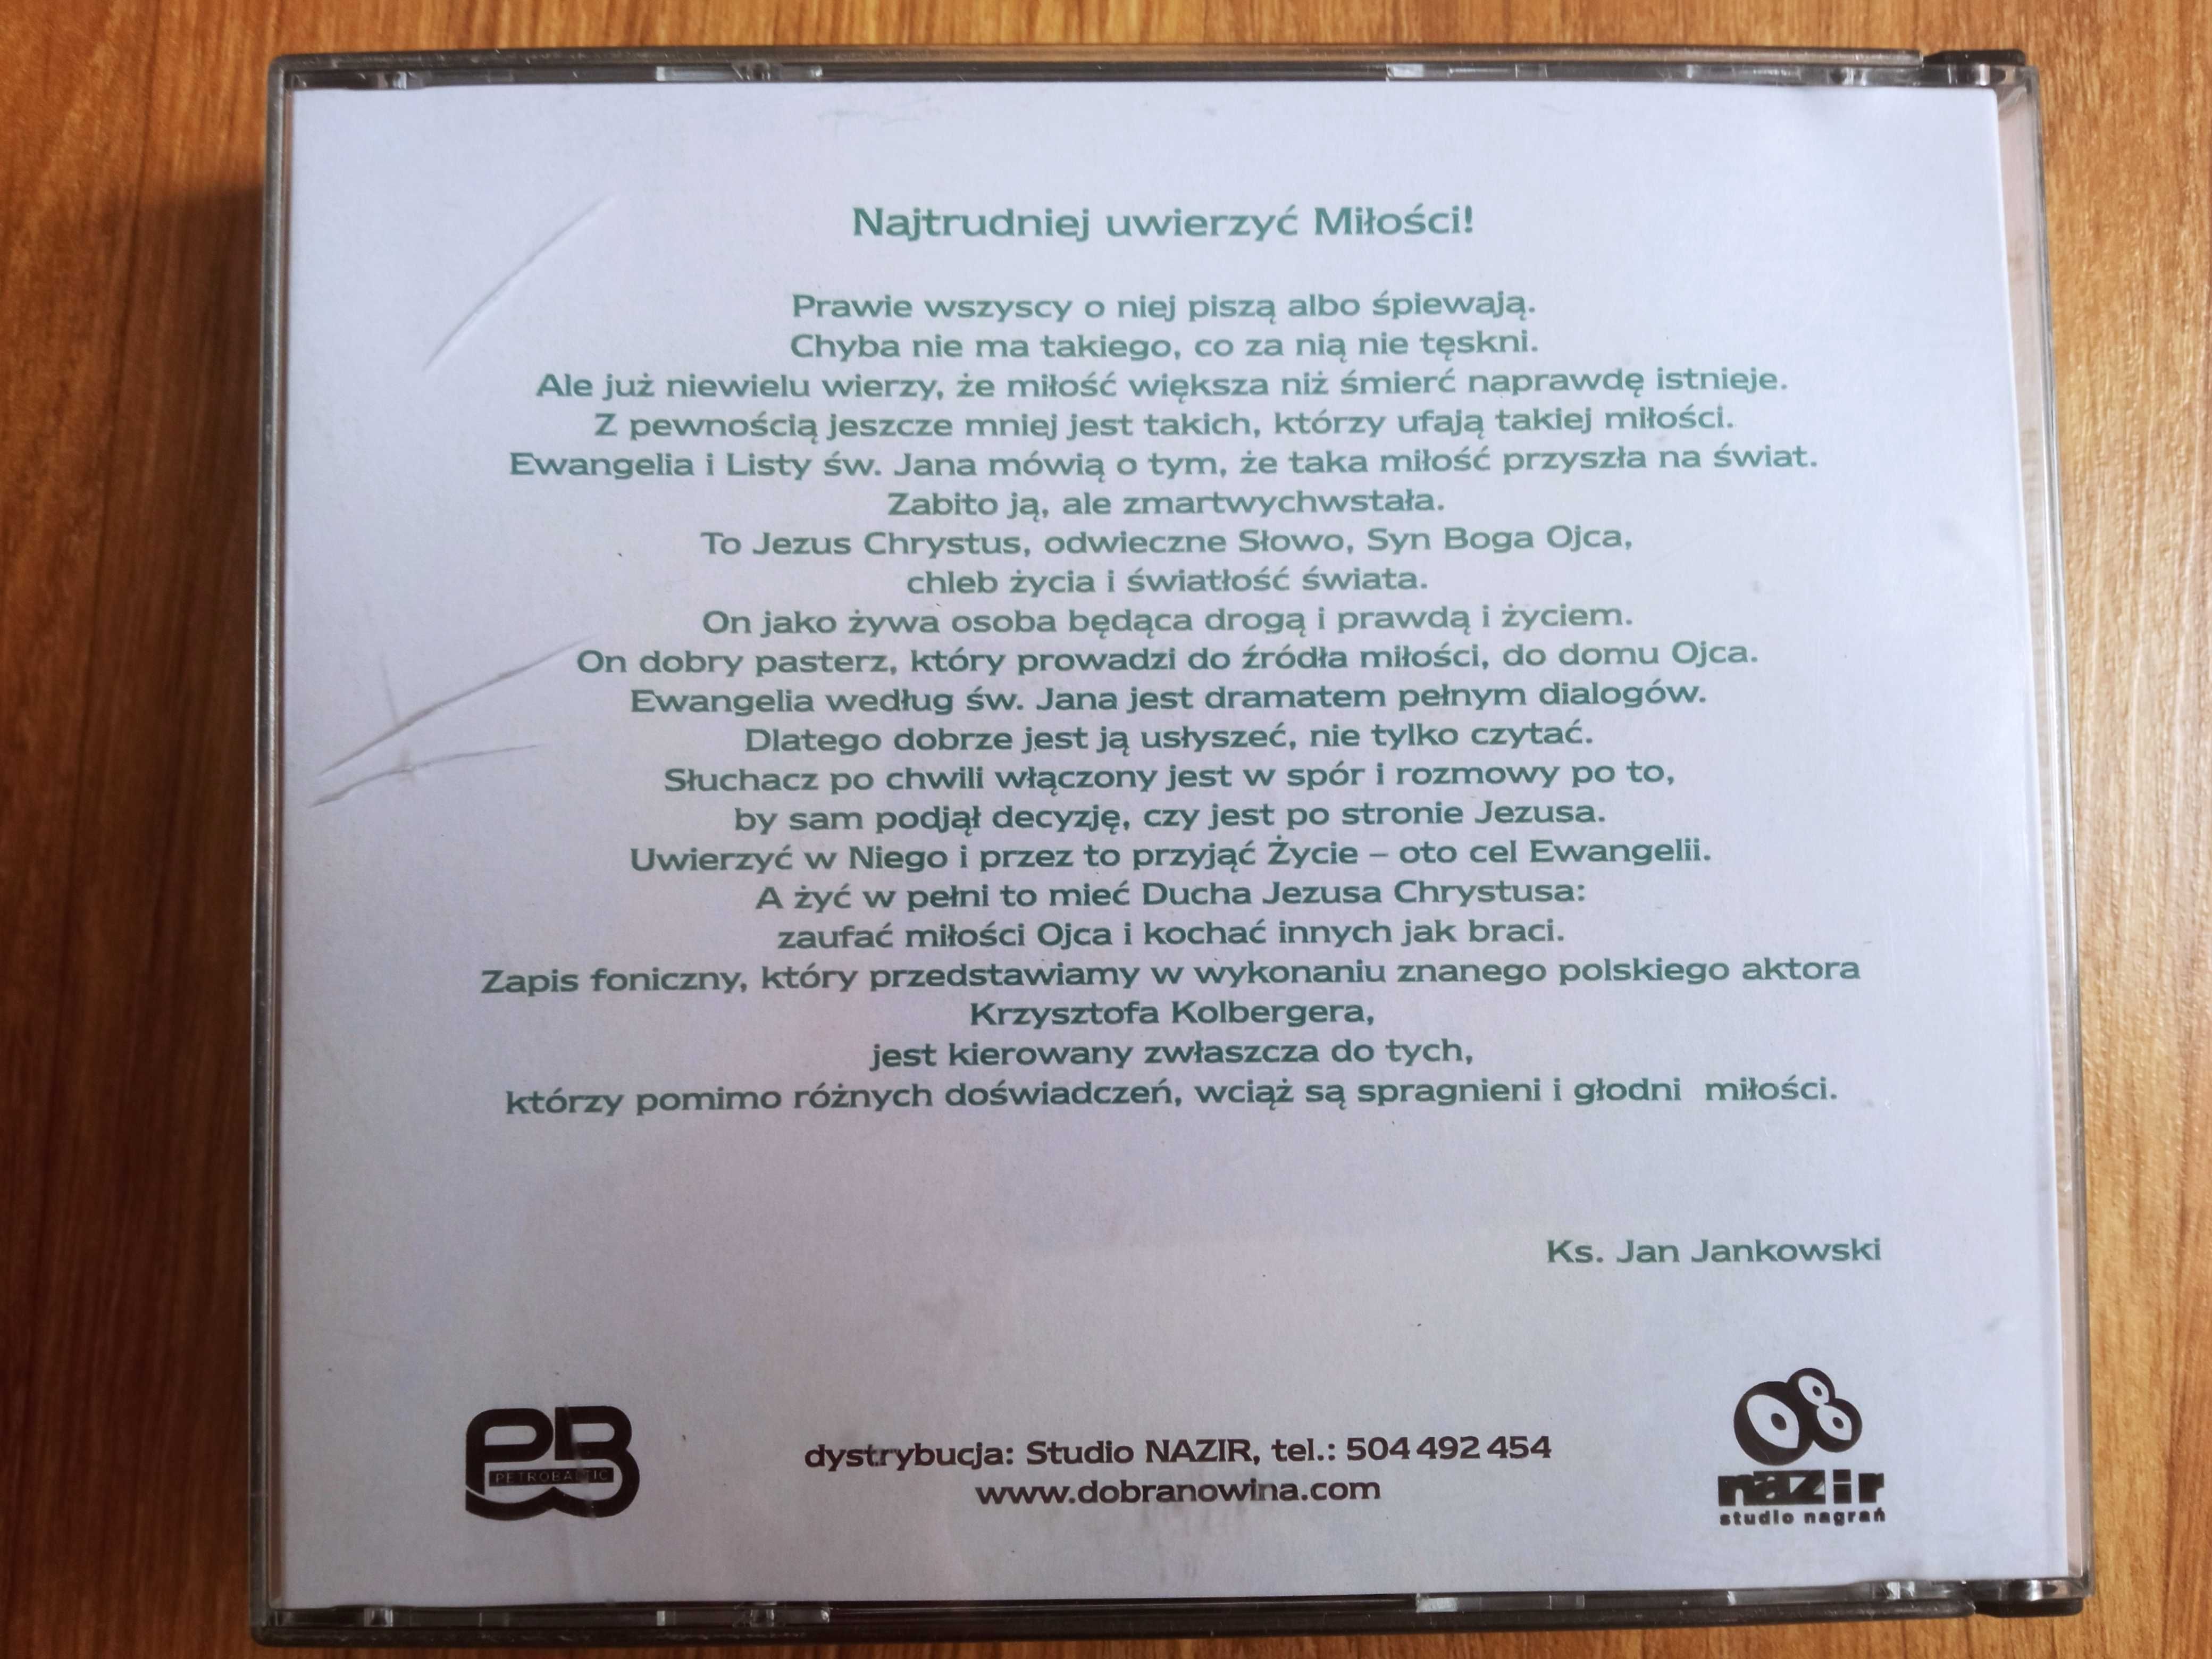 Ewangelia według świętego Jana Listy płyta CD kolekcje